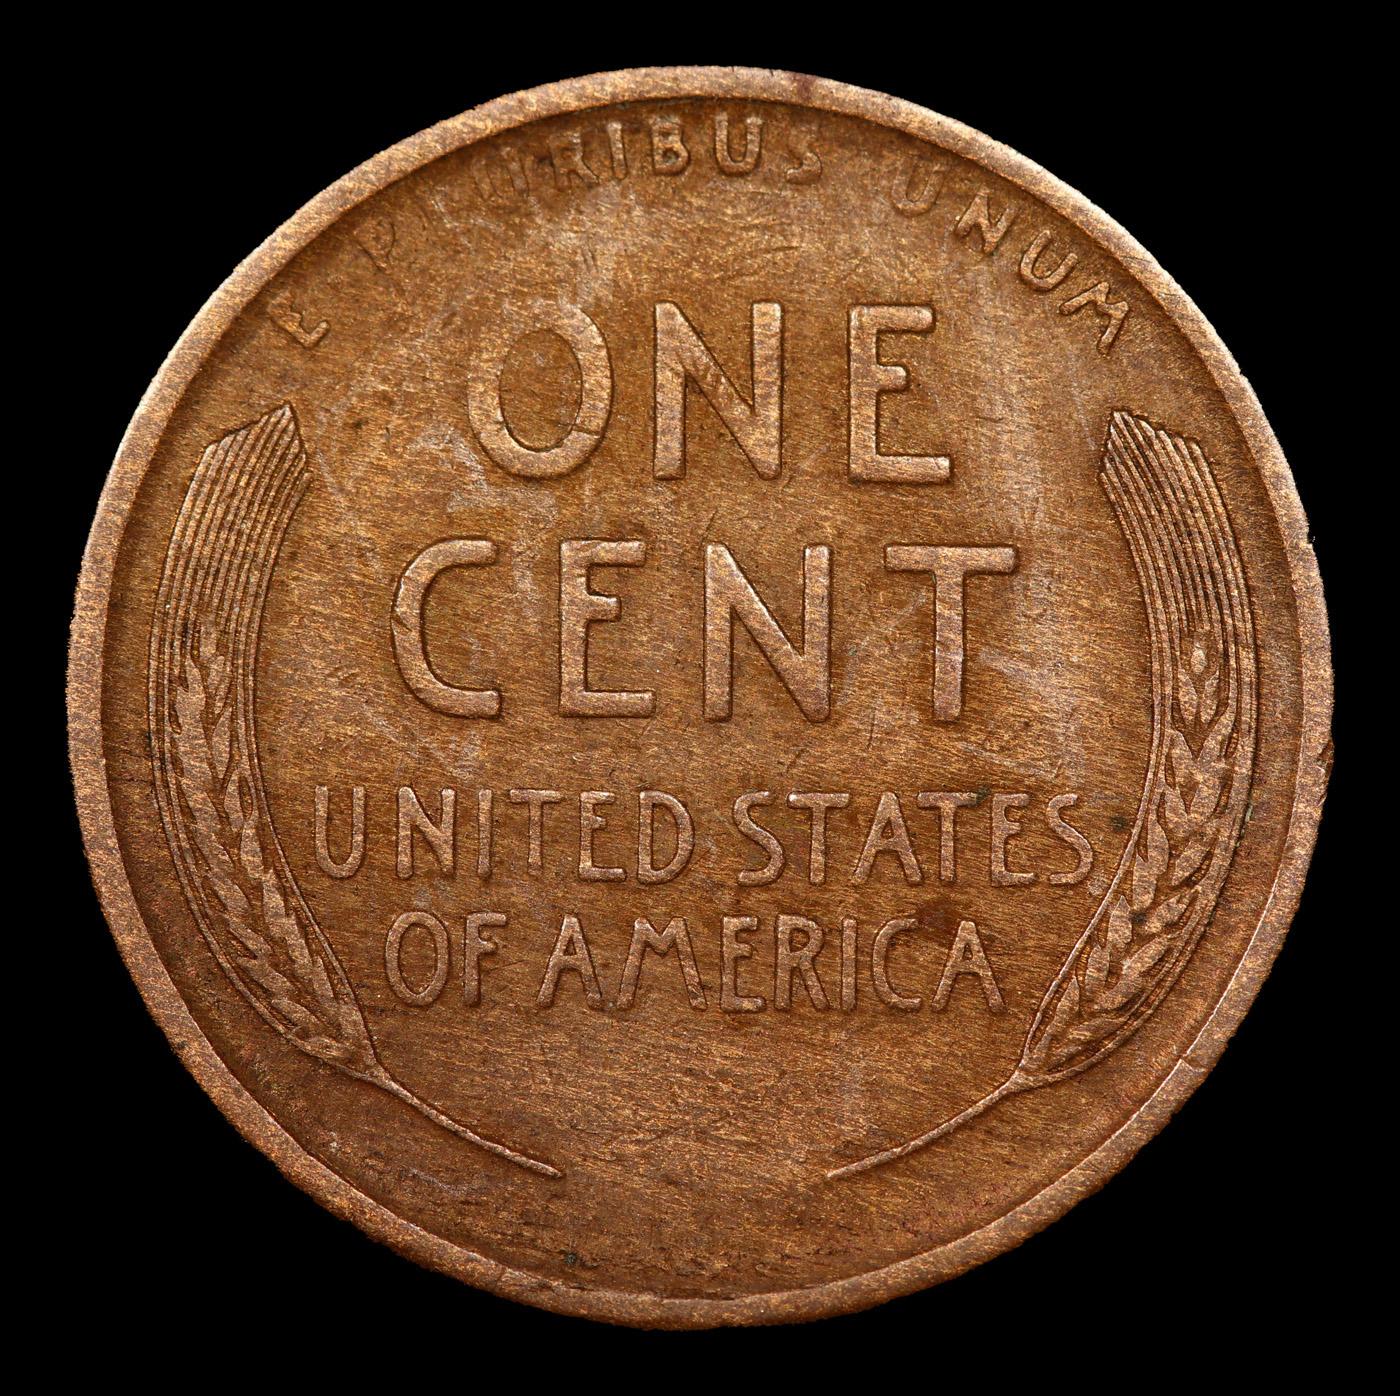 1909-s Lincoln Cent 1c Grades vf++